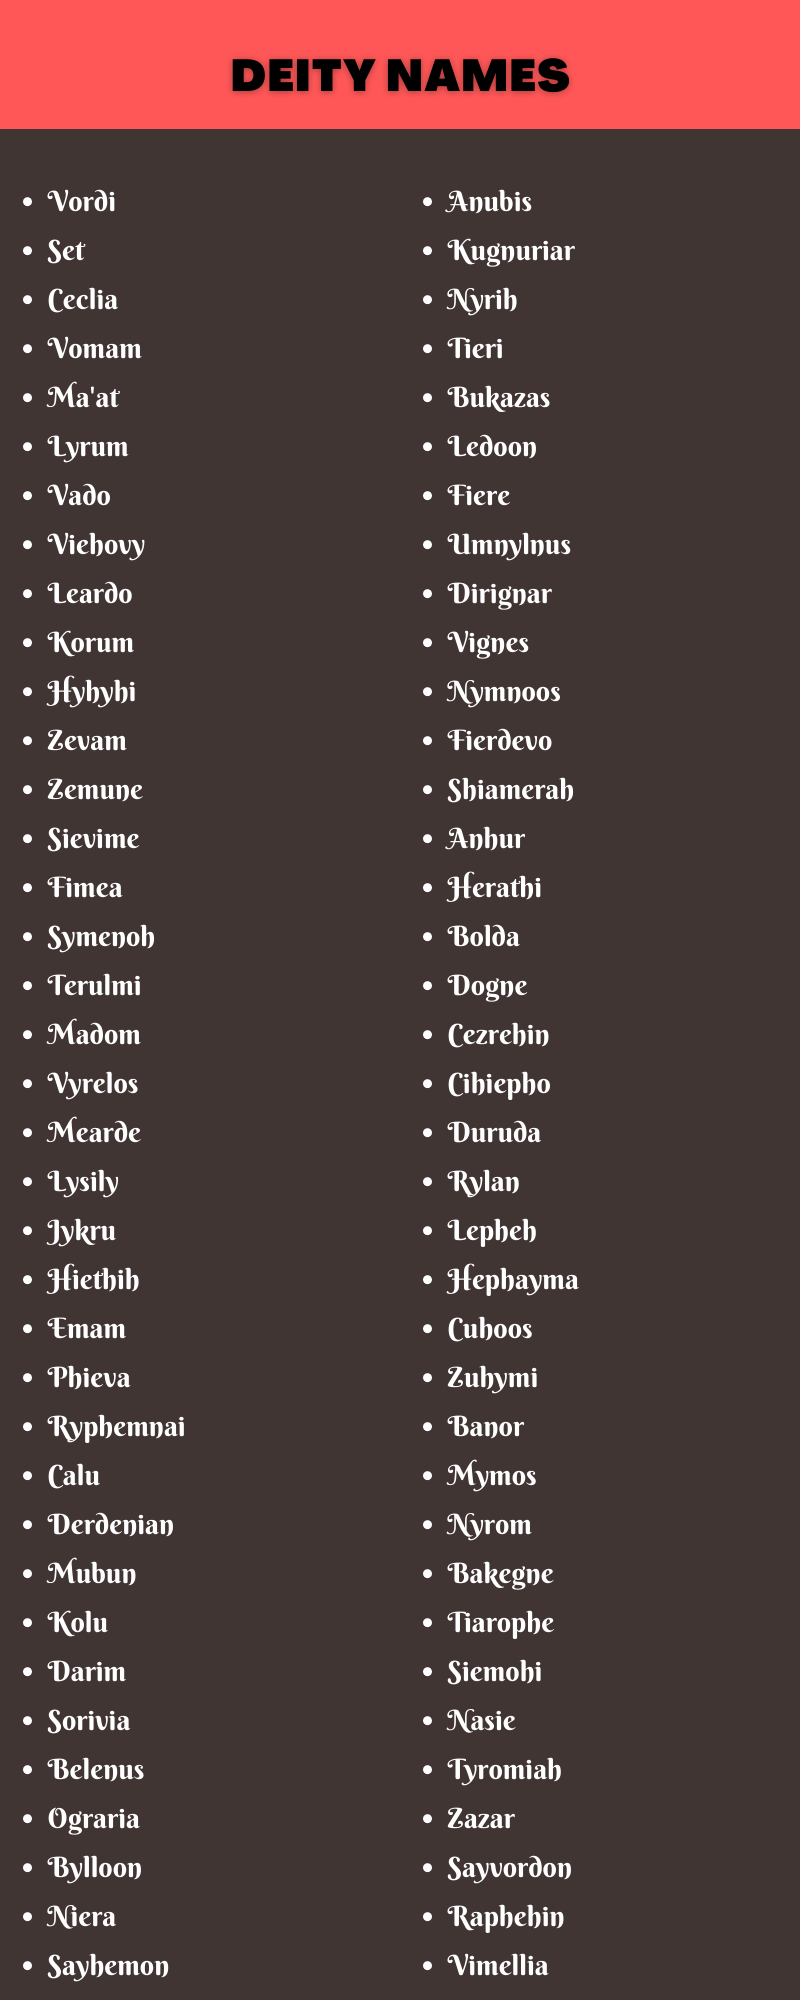 Deity Names